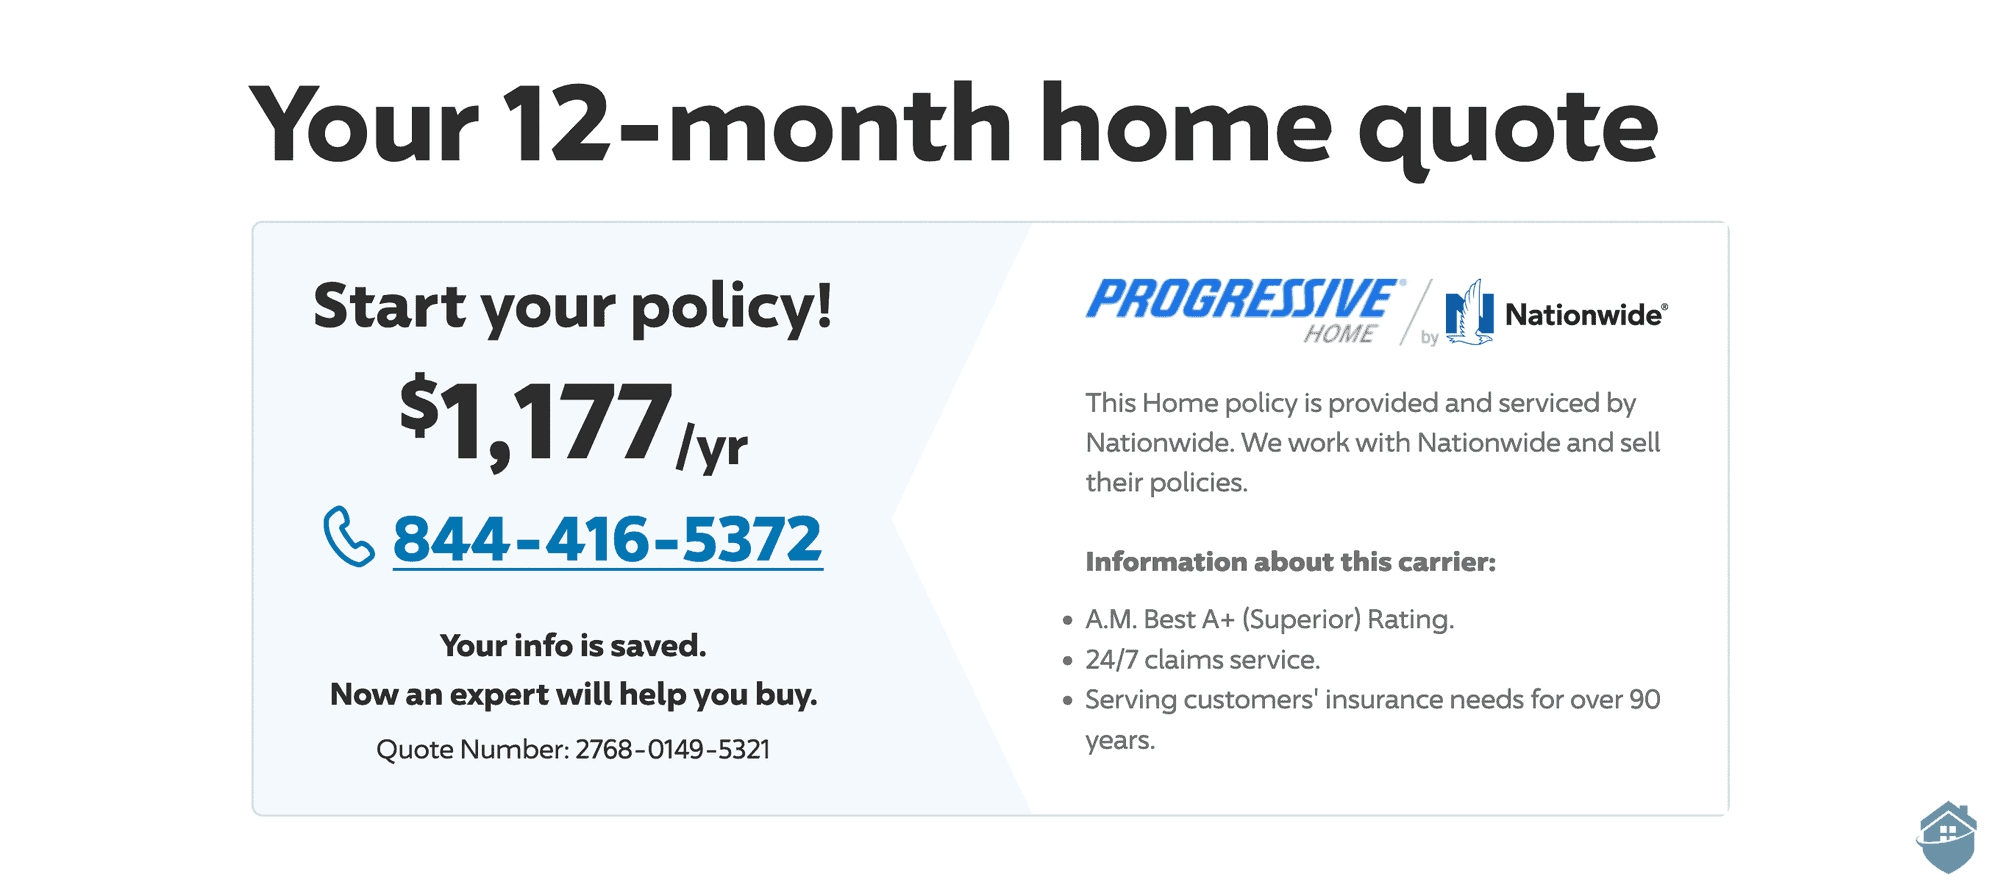 When my priority was a lower premium, Progressive found me a much cheaper quote.